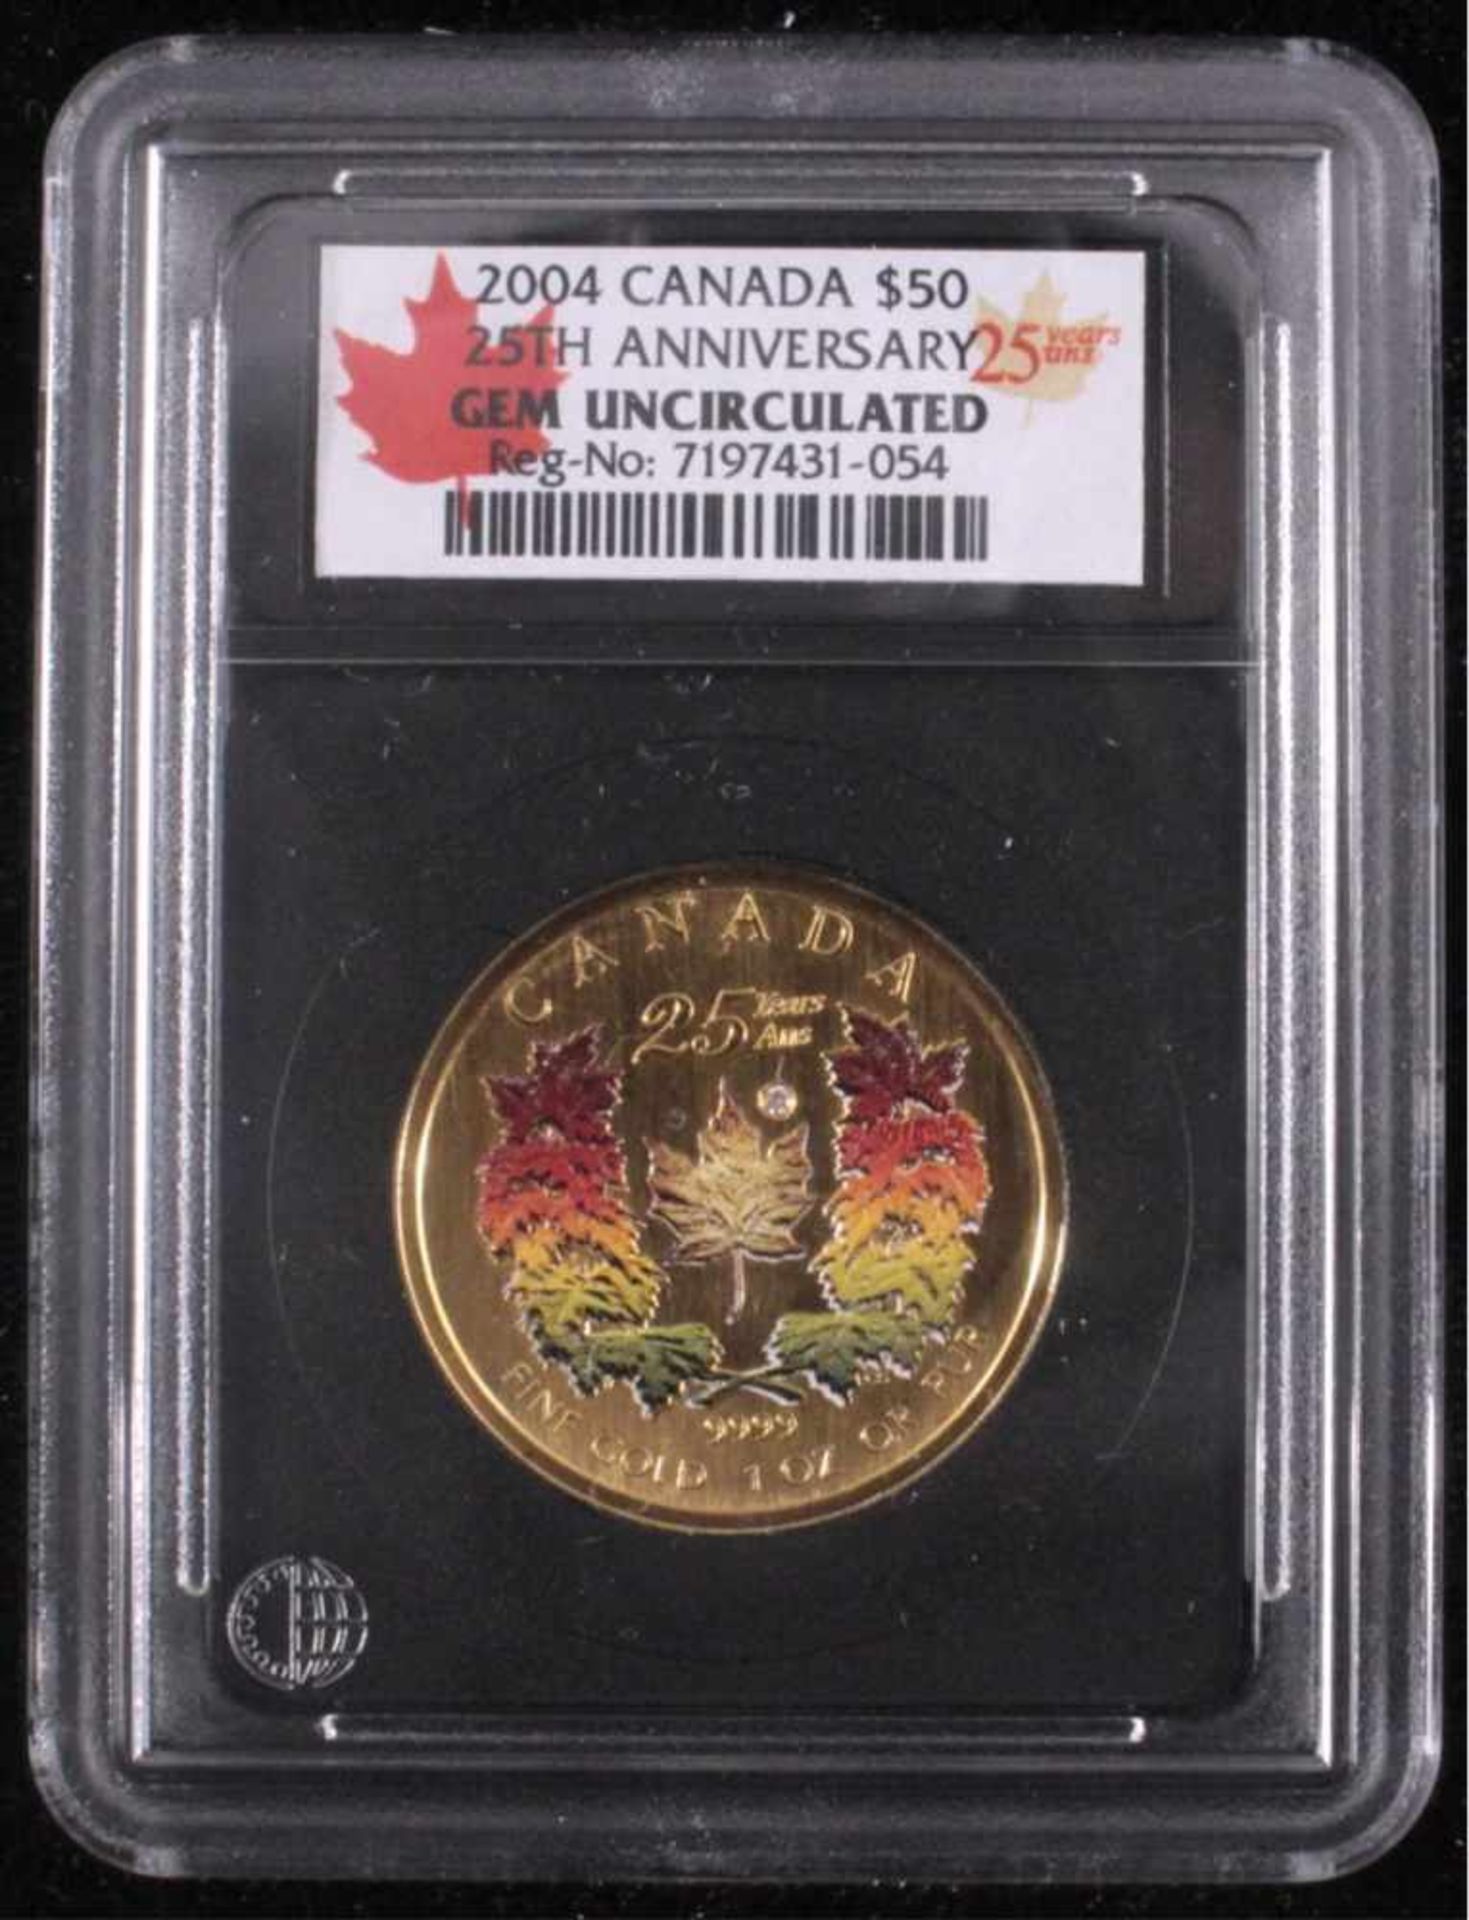 1 oz Maple Leaf Goldmünze50 kanadische Dollar, koloriert und mit einem Diamantenbesetzt. Inklusive - Image 2 of 4